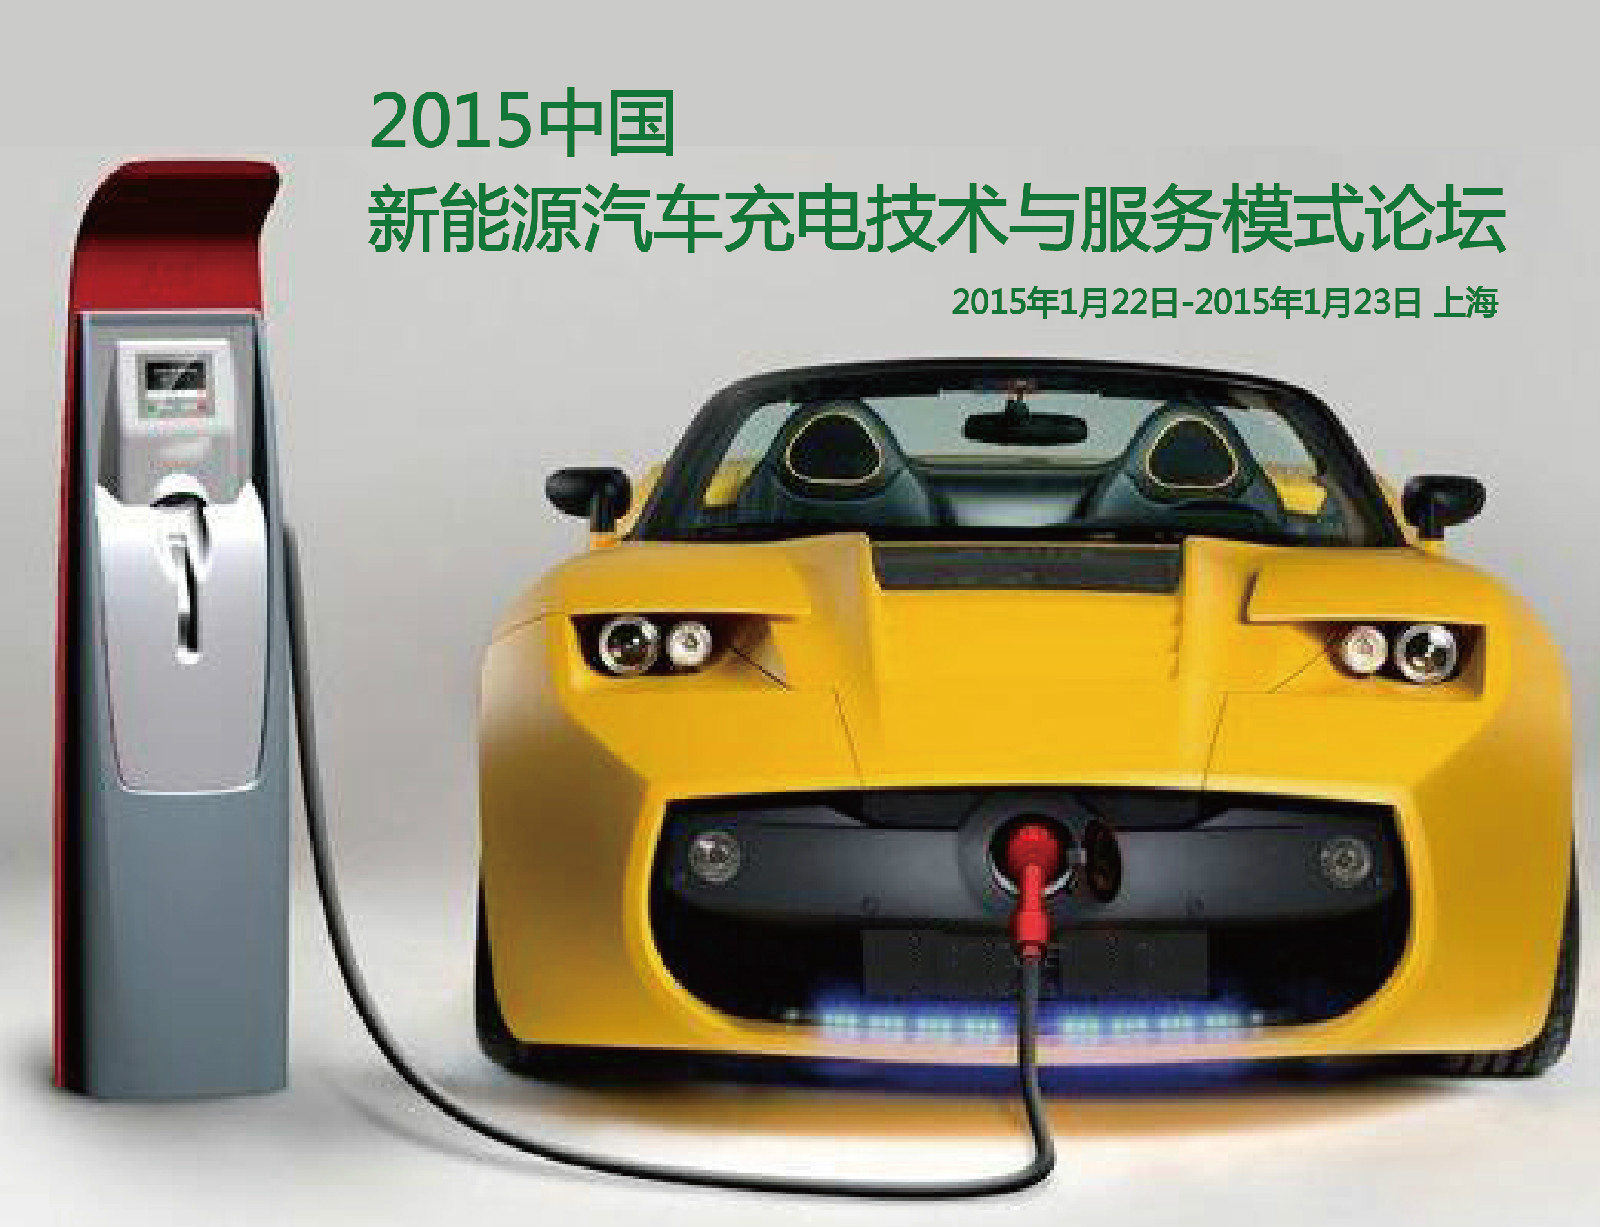 2015第五屆中國新能源汽車充電技術與服務模式論壇